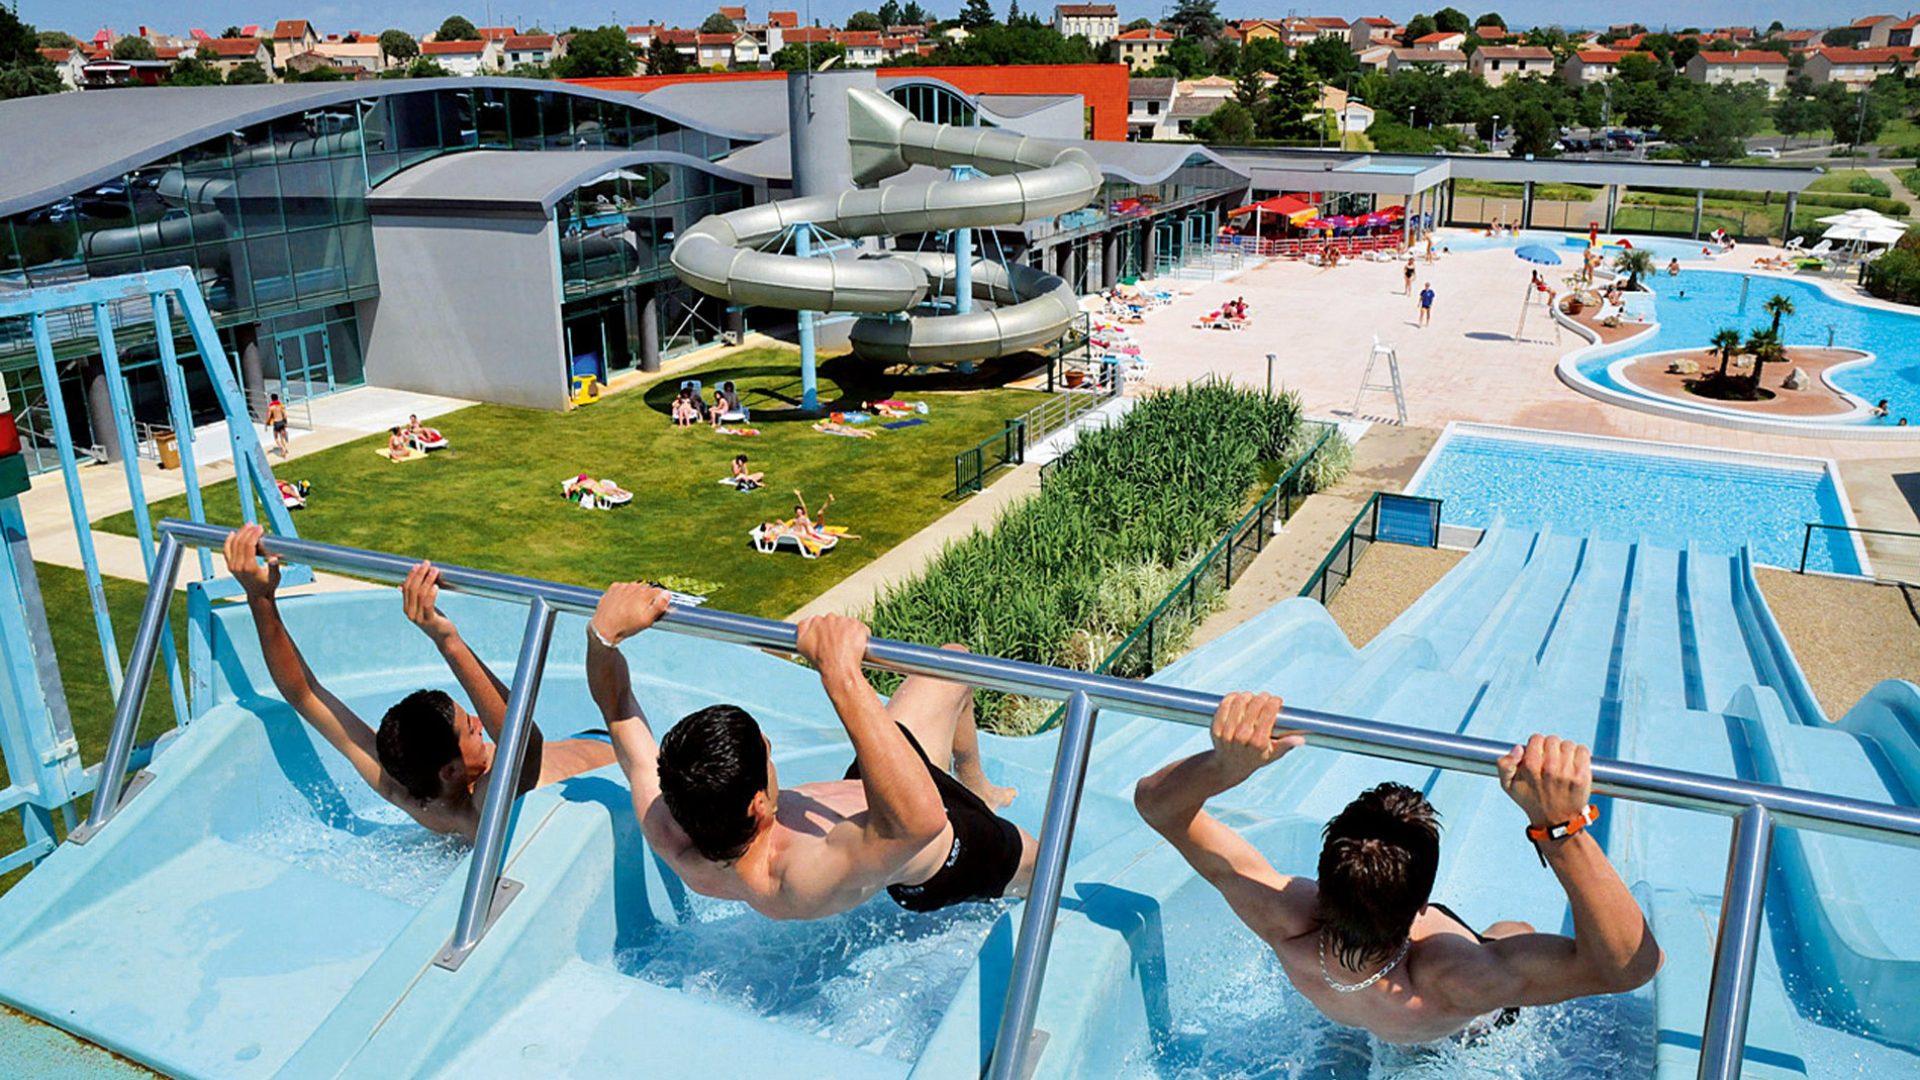 阿爾比 - 亞特蘭提斯水上運動區 - 運動和休閒、室內和室外游泳池